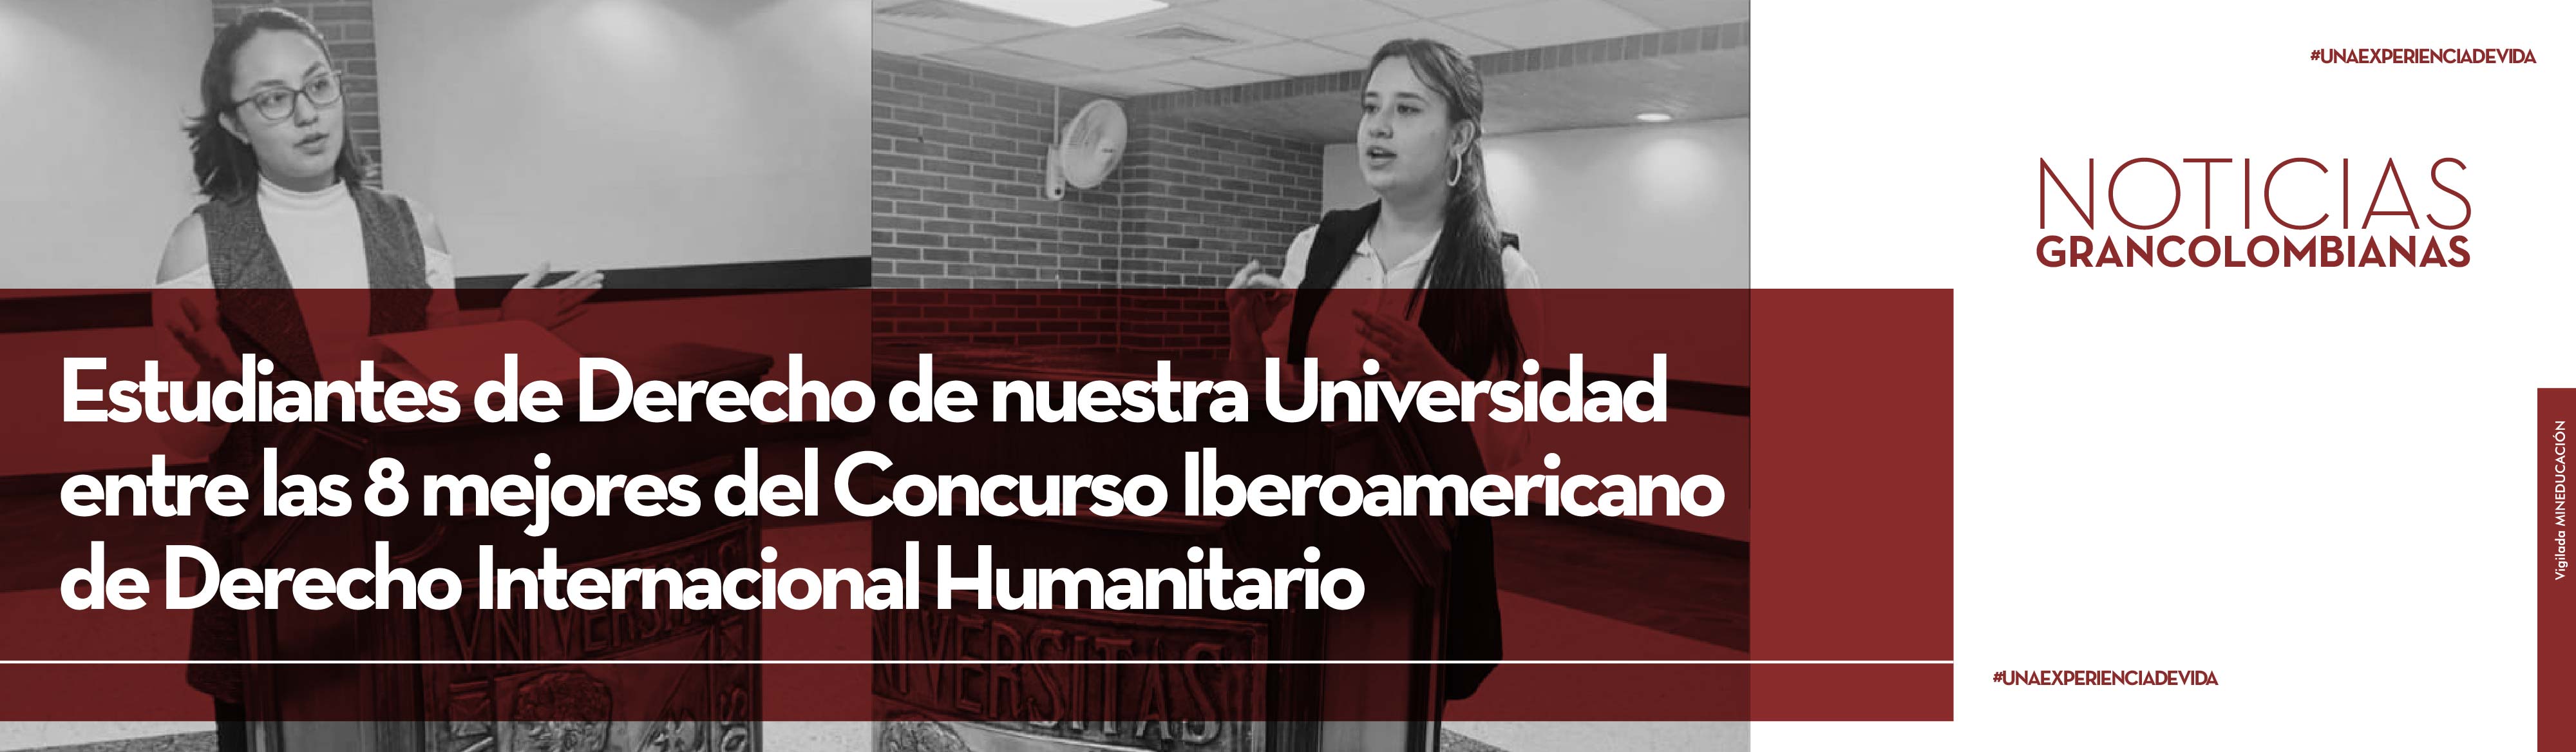 Estudiantes de Derecho de nuestra universidad entre los 8 mejores del Concurso  Iberoamericano de Derecho Internacional Humanitario